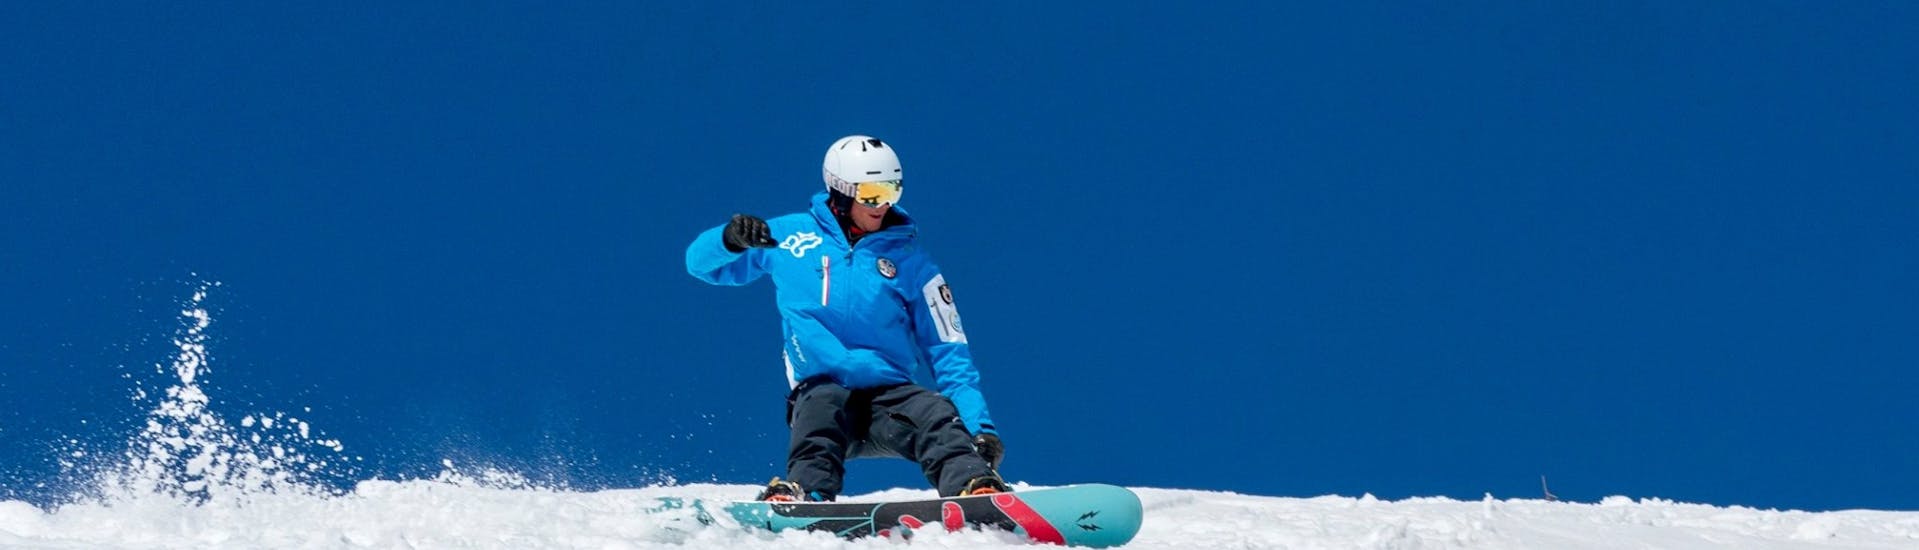 Ein Snowboarder auf den Pisten von Val di Pejo während des Snowboard-Privatkurses für alle Levels mit Scuola Sci e Snowboard Val di Pejo.